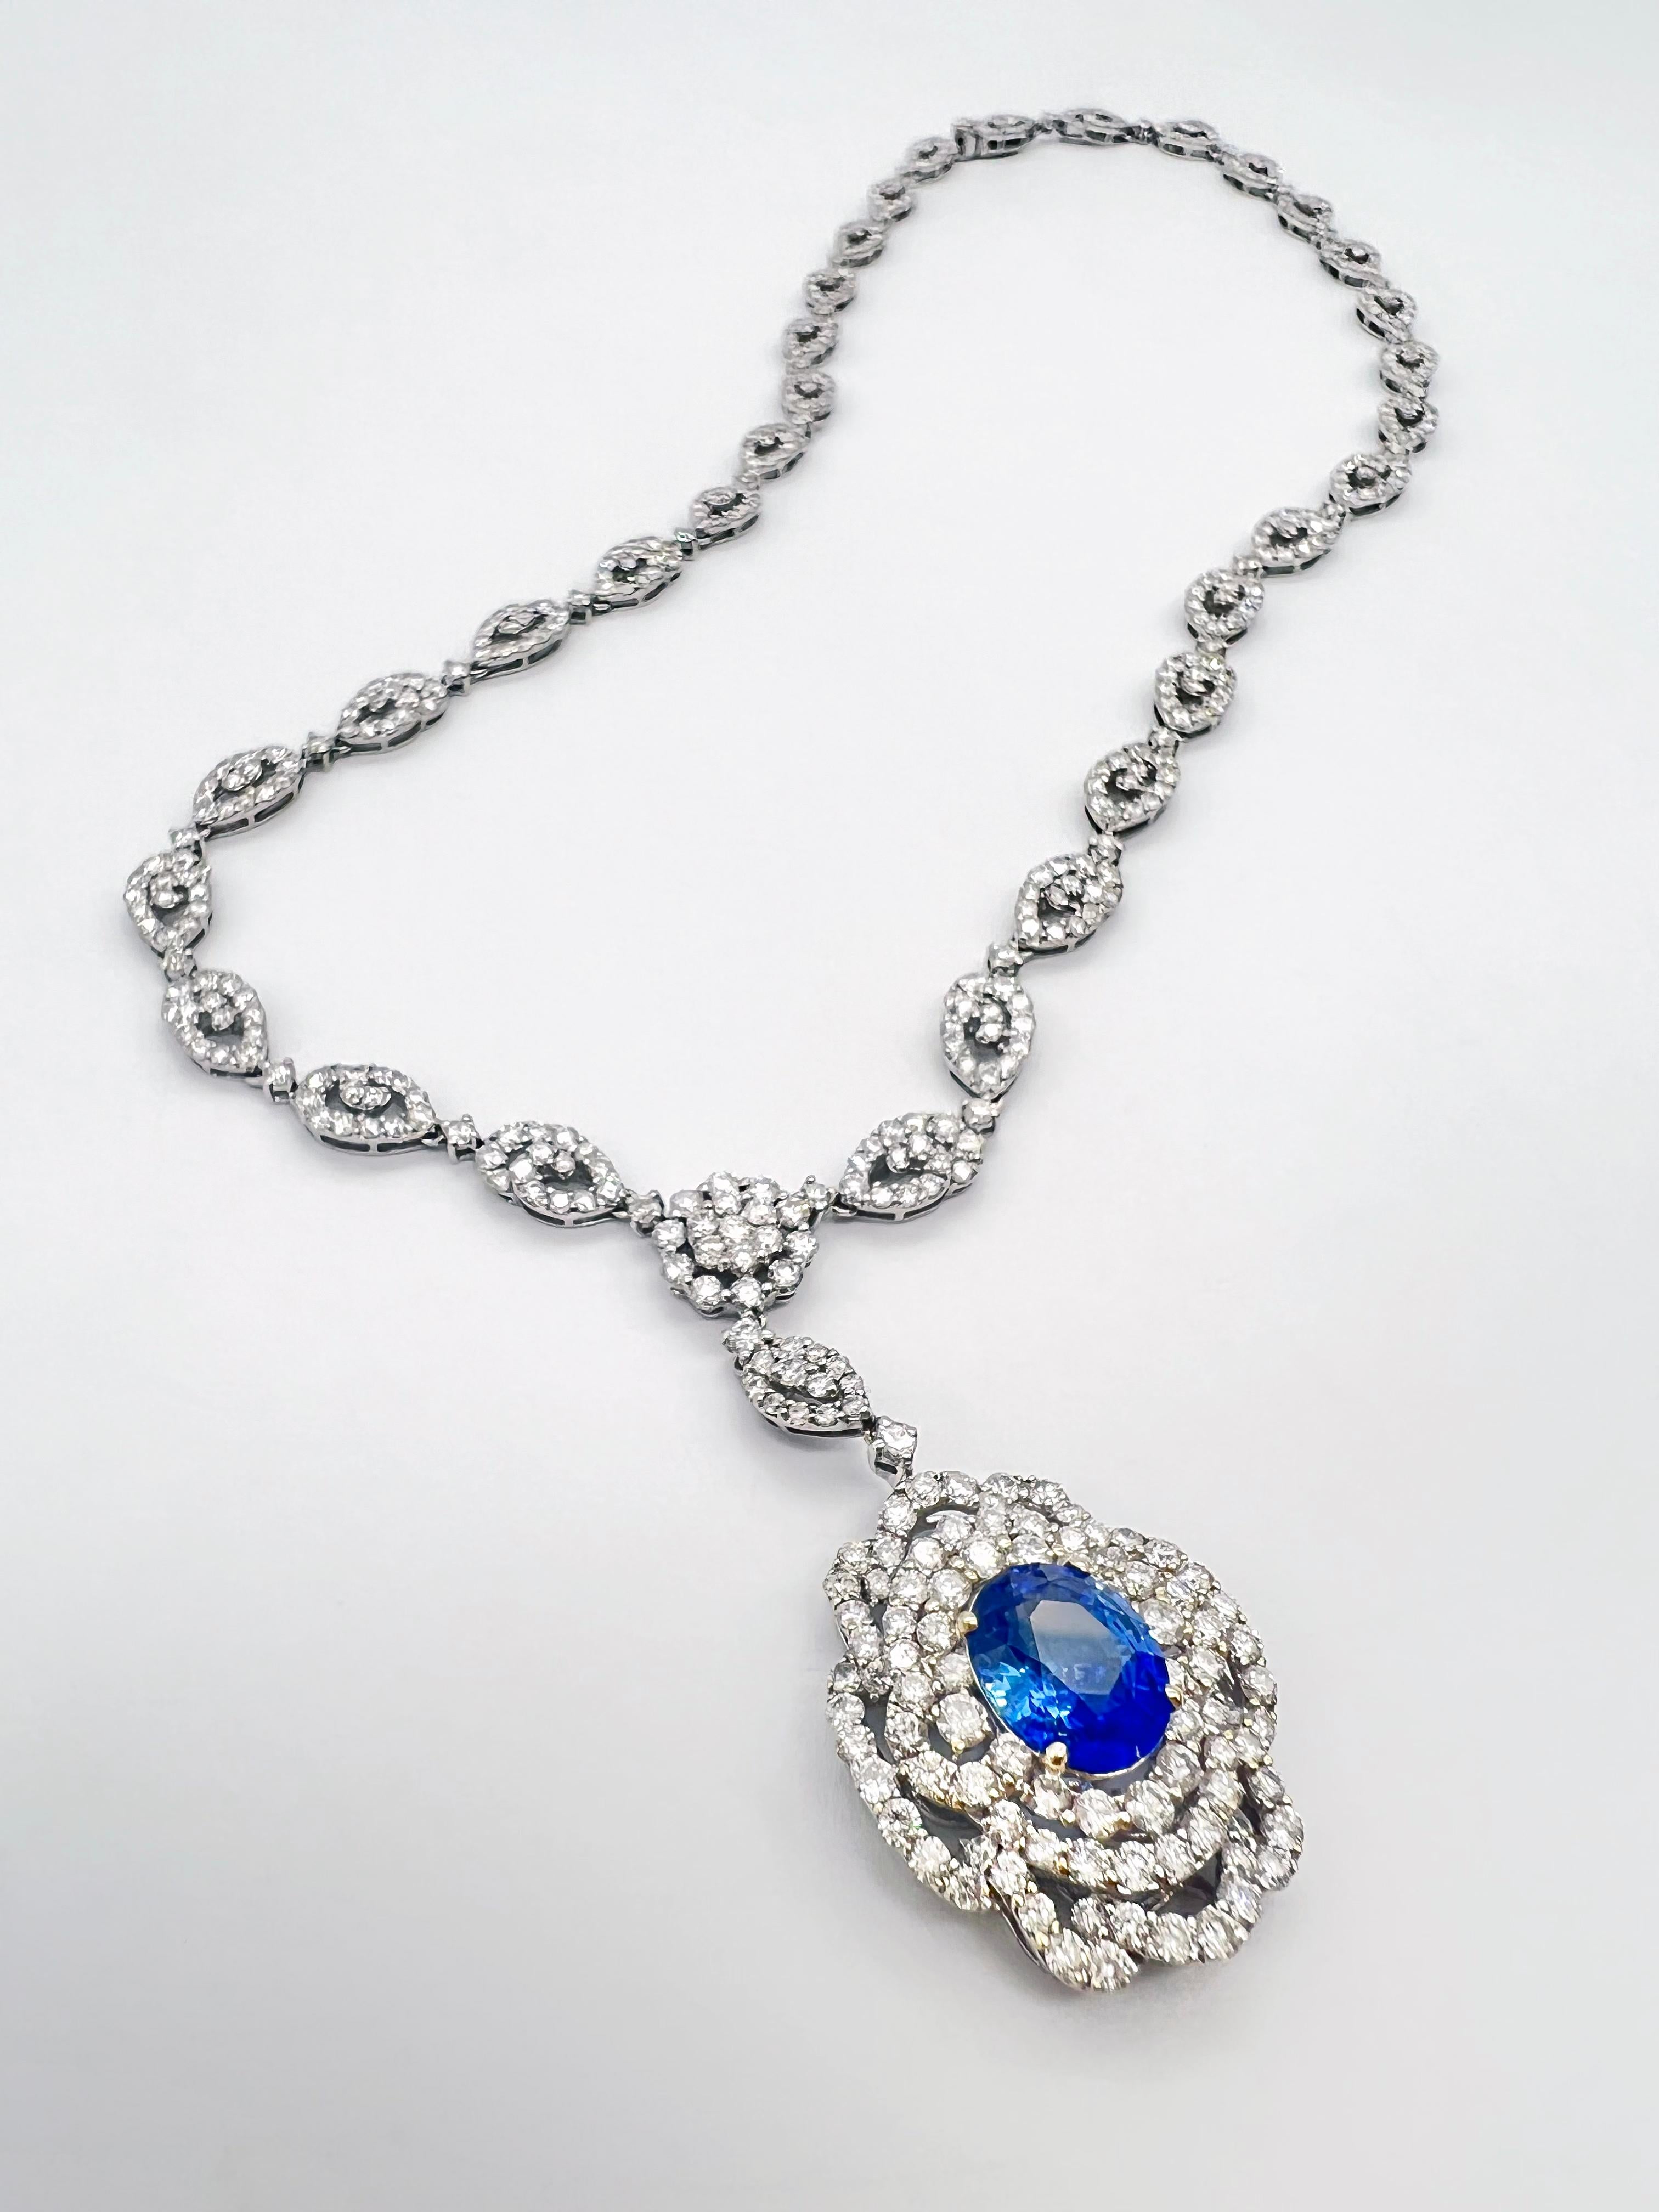 17,17 Karat Saphir und Diamant Weißgold-Anhänger Halskette, GIA zertifiziert

Diese atemberaubende Halskette präsentiert einen einzelnen Ceylon-Saphir von 3,05 Karat, der für seine Beständigkeit und Ewigkeit bekannt ist. Der Saphir und die Diamanten